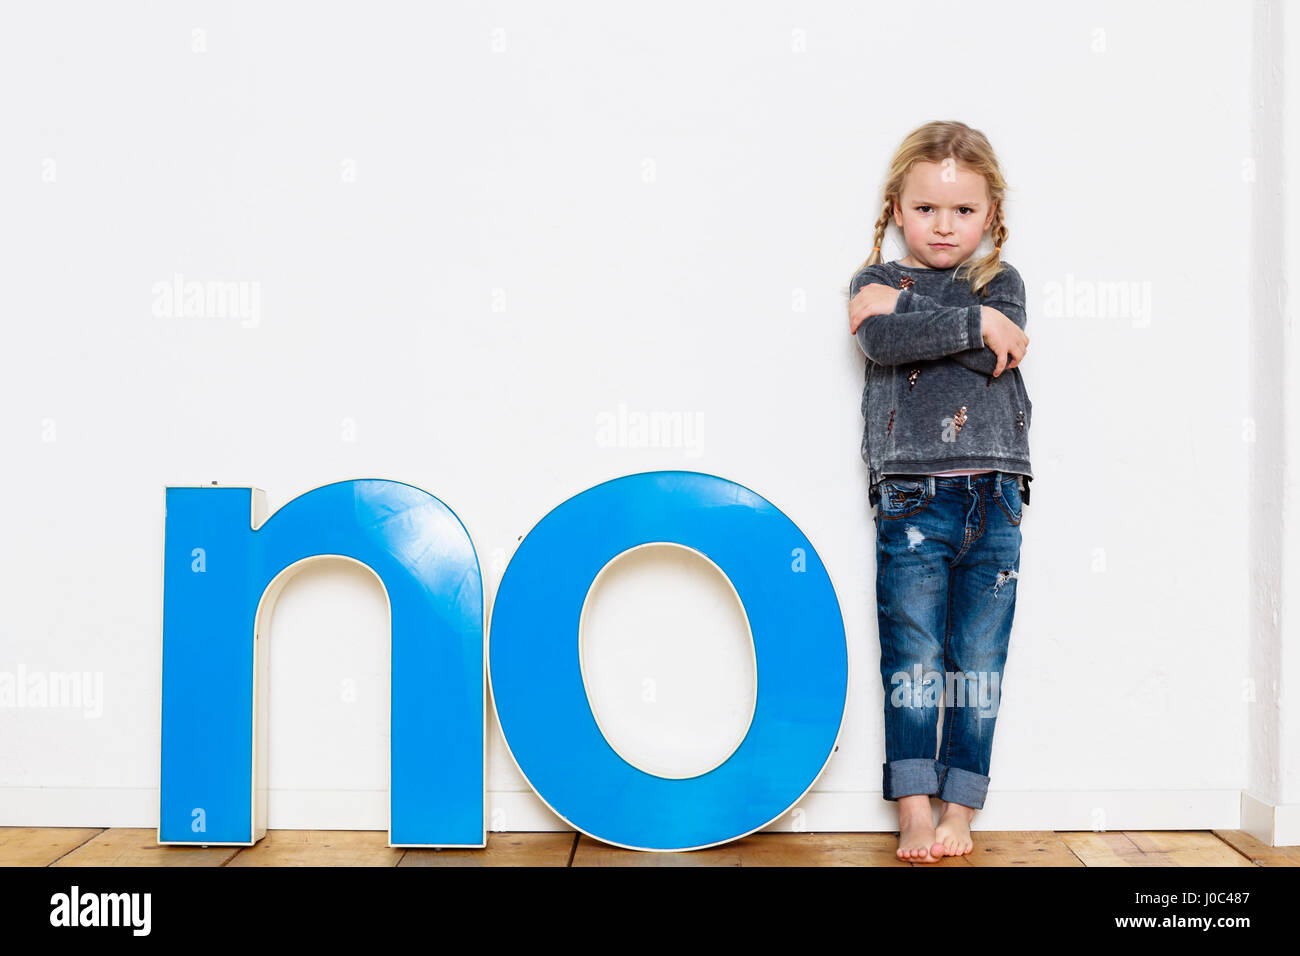 Jeune fille debout à côté de grandes lettres en trois dimensions, l'orthographe du mot NO Banque D'Images